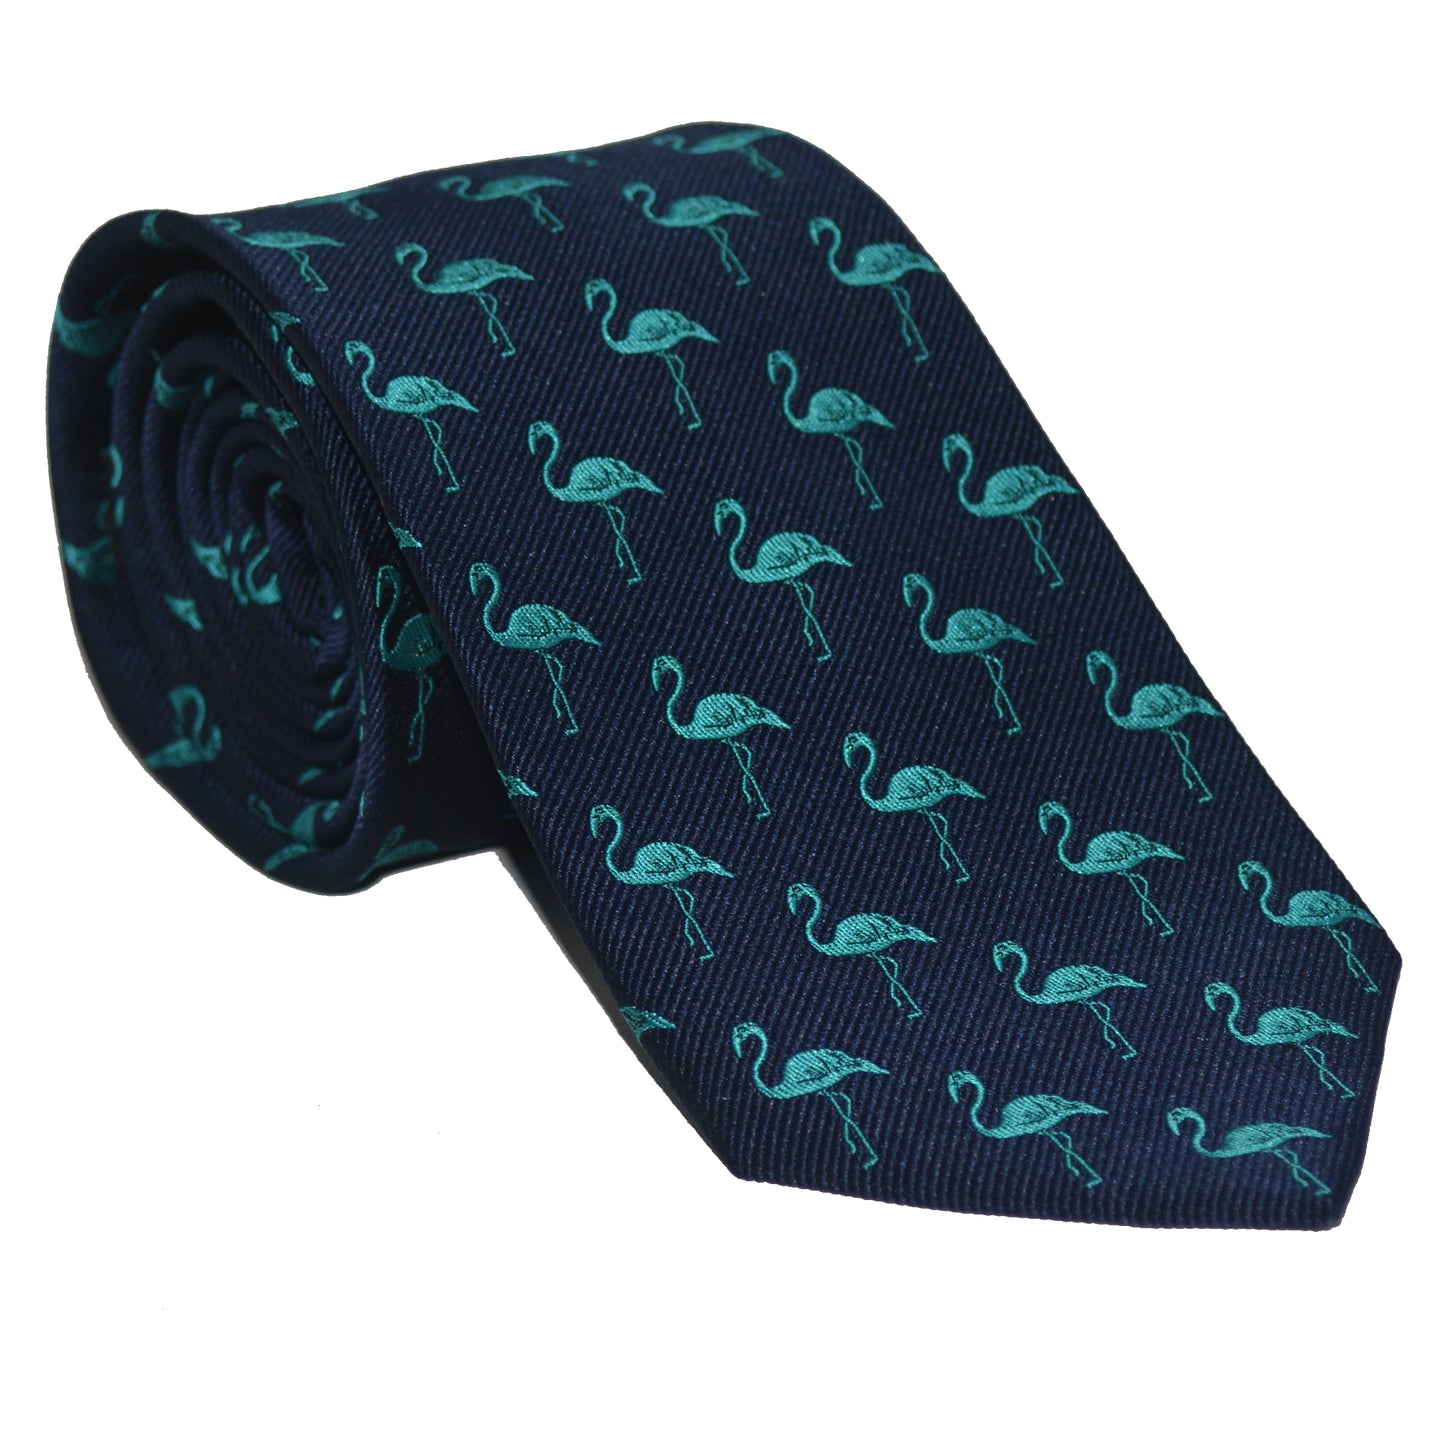 Flamingo Necktie - Turquoise on Navy, Woven Silk - SummerTies